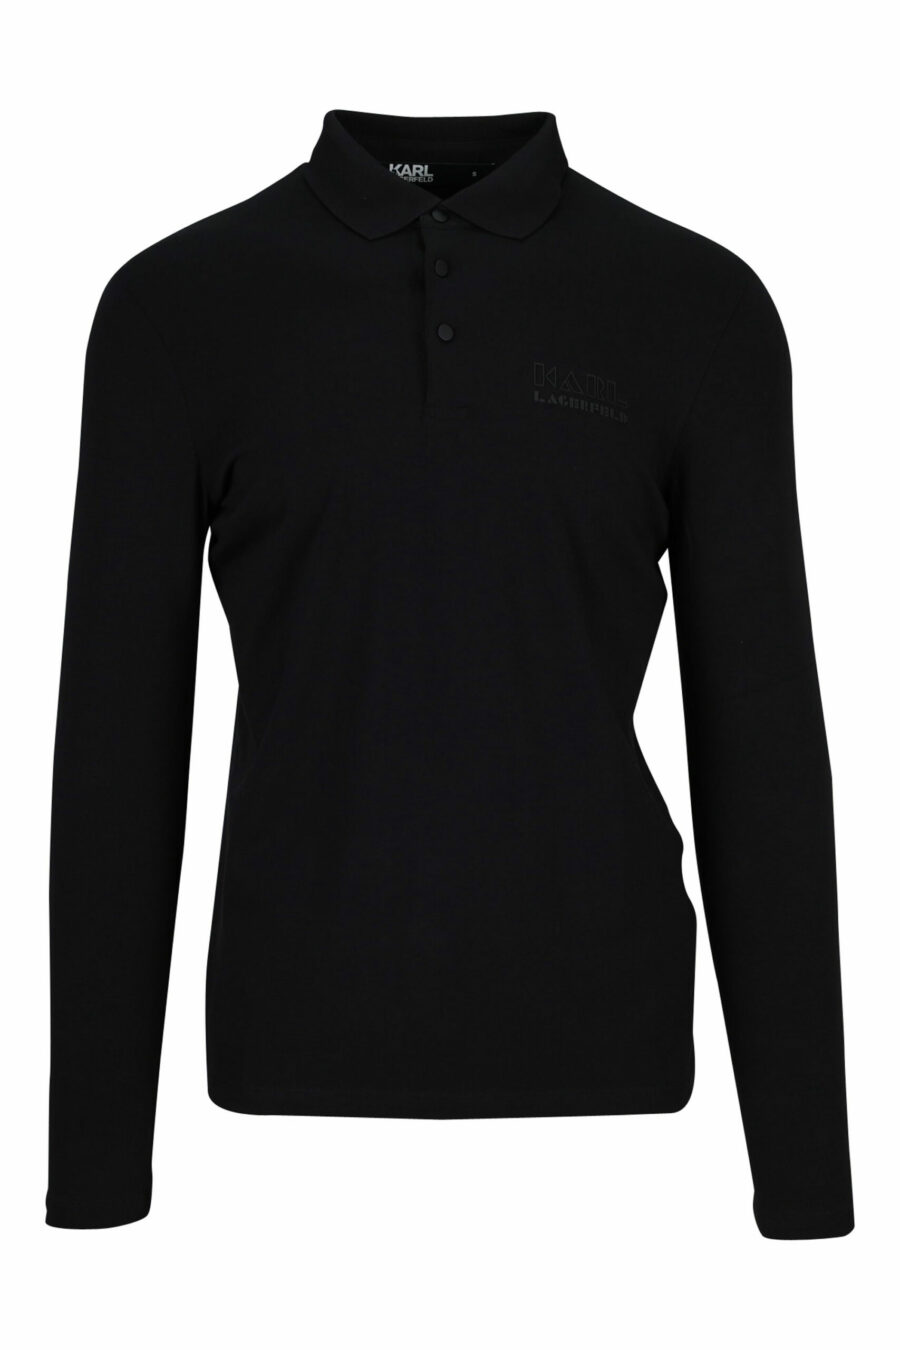 Langärmeliges schwarzes Poloshirt mit Knöpfen und schwarzem Minilogue - 4062226398008 skaliert